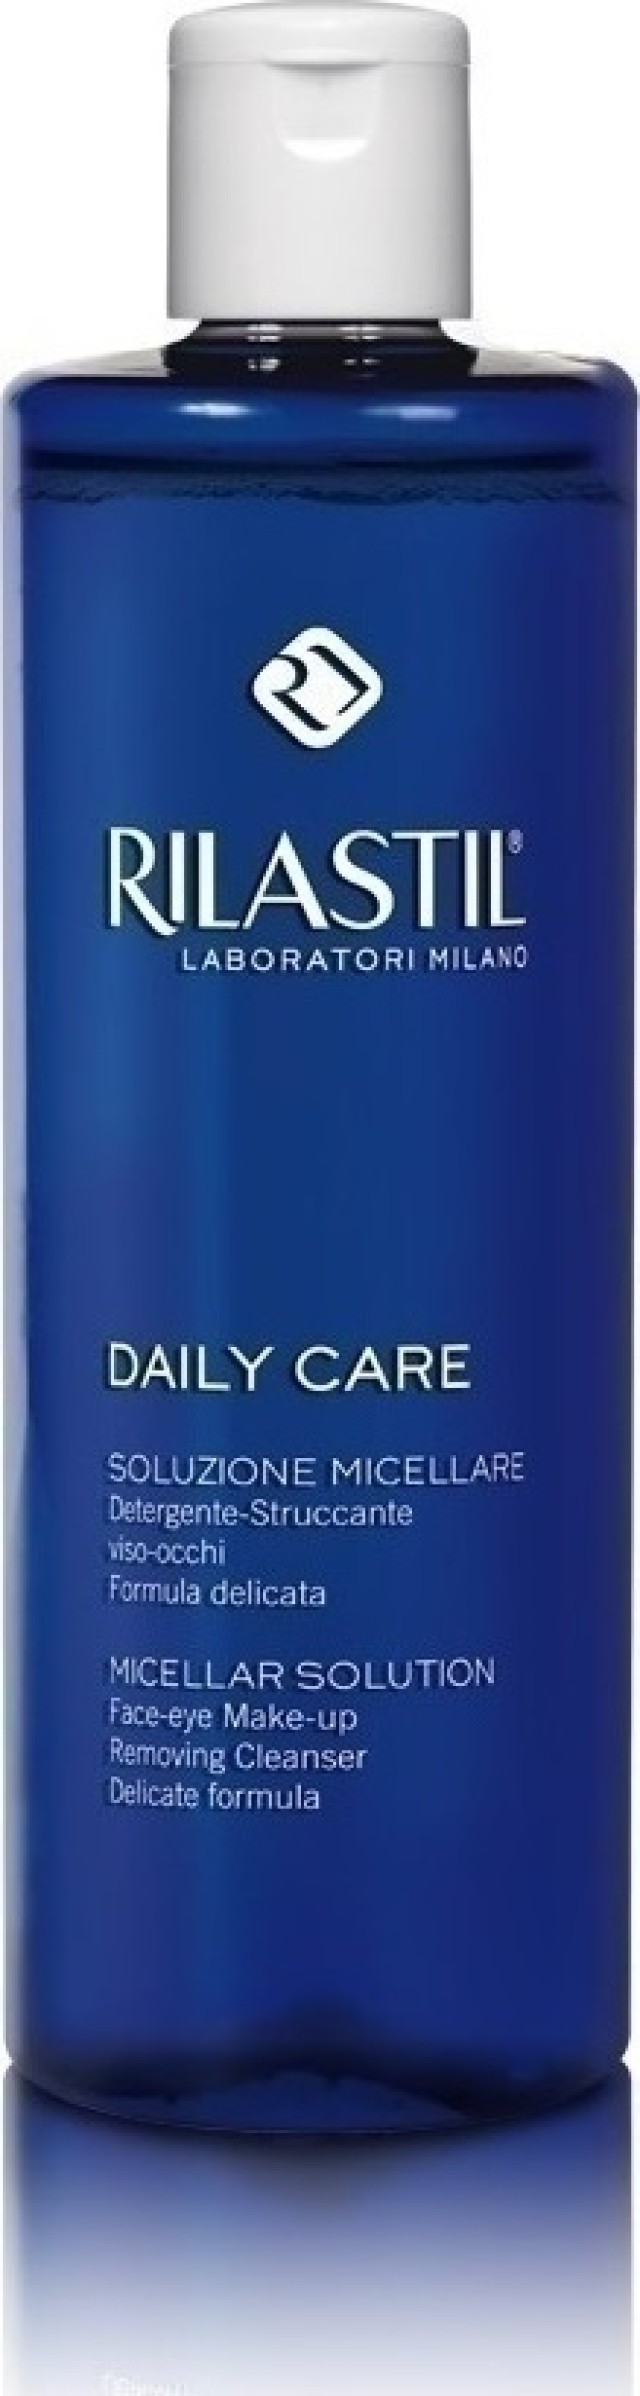 Rilastil Daily Care Micellar Solution Καθαριστικό Ντεμακιγιάζ Προσώπου & Ματιών 250ml